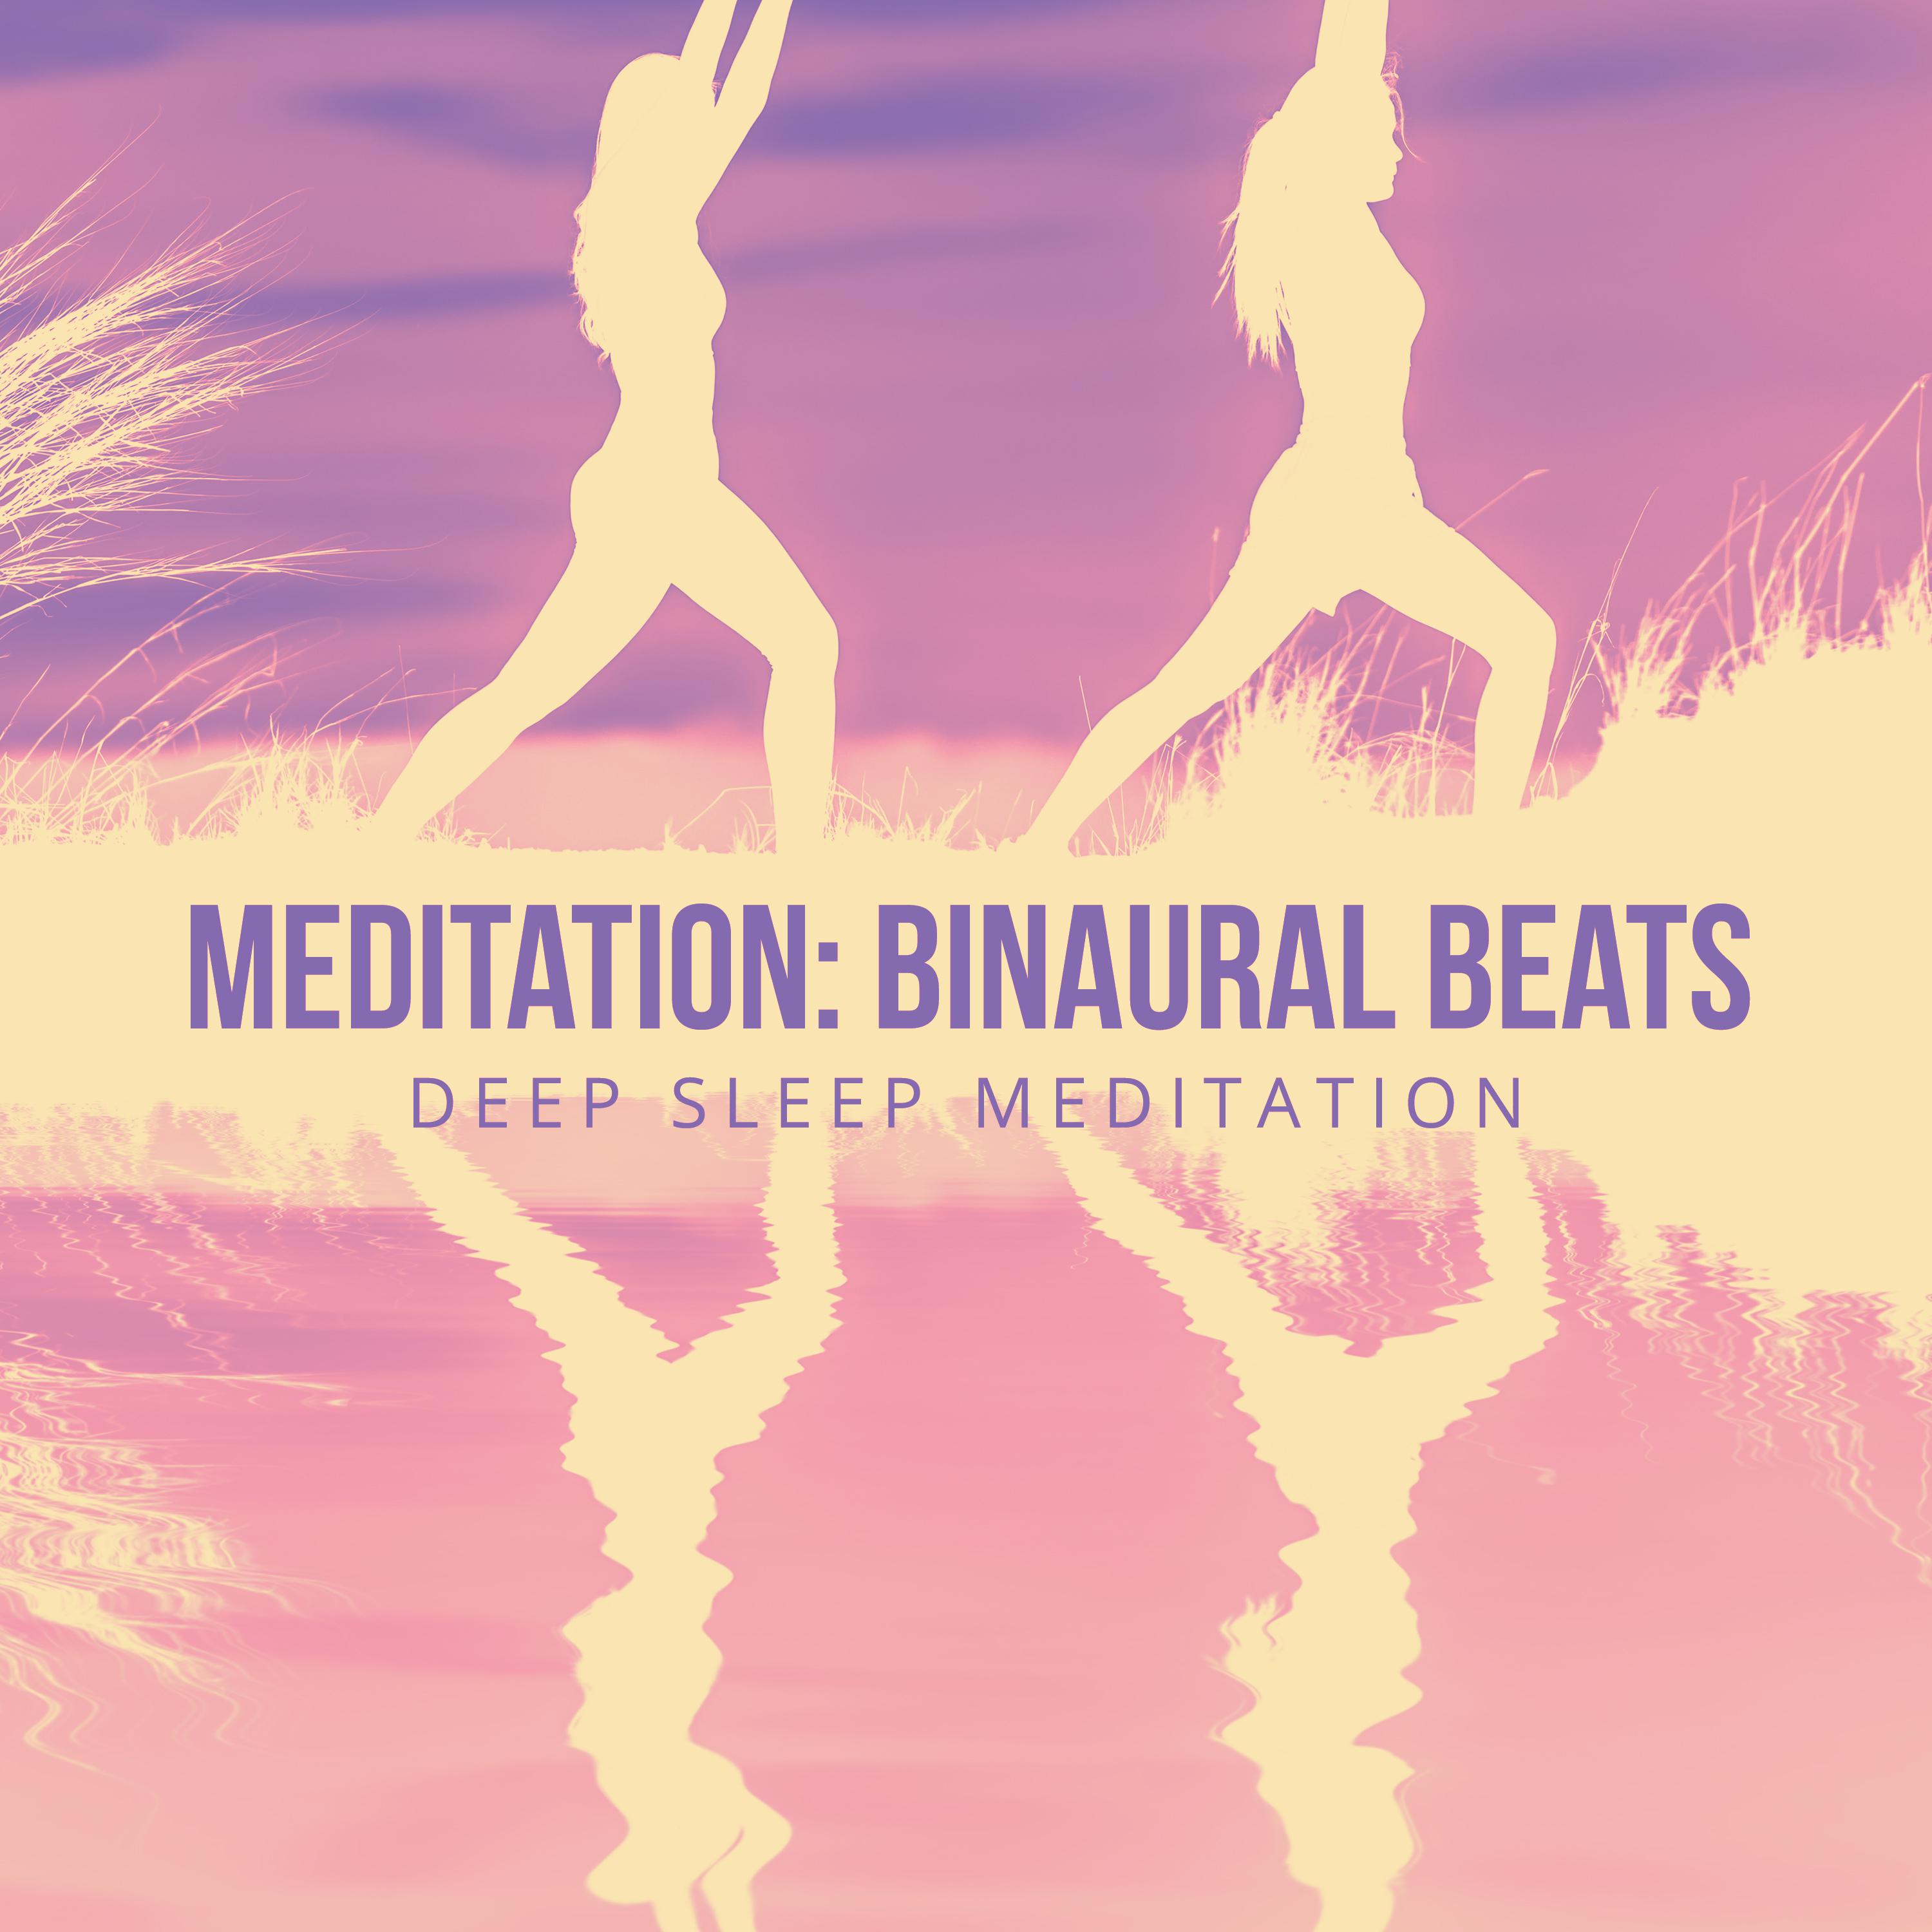 Meditation: Binaural Beats